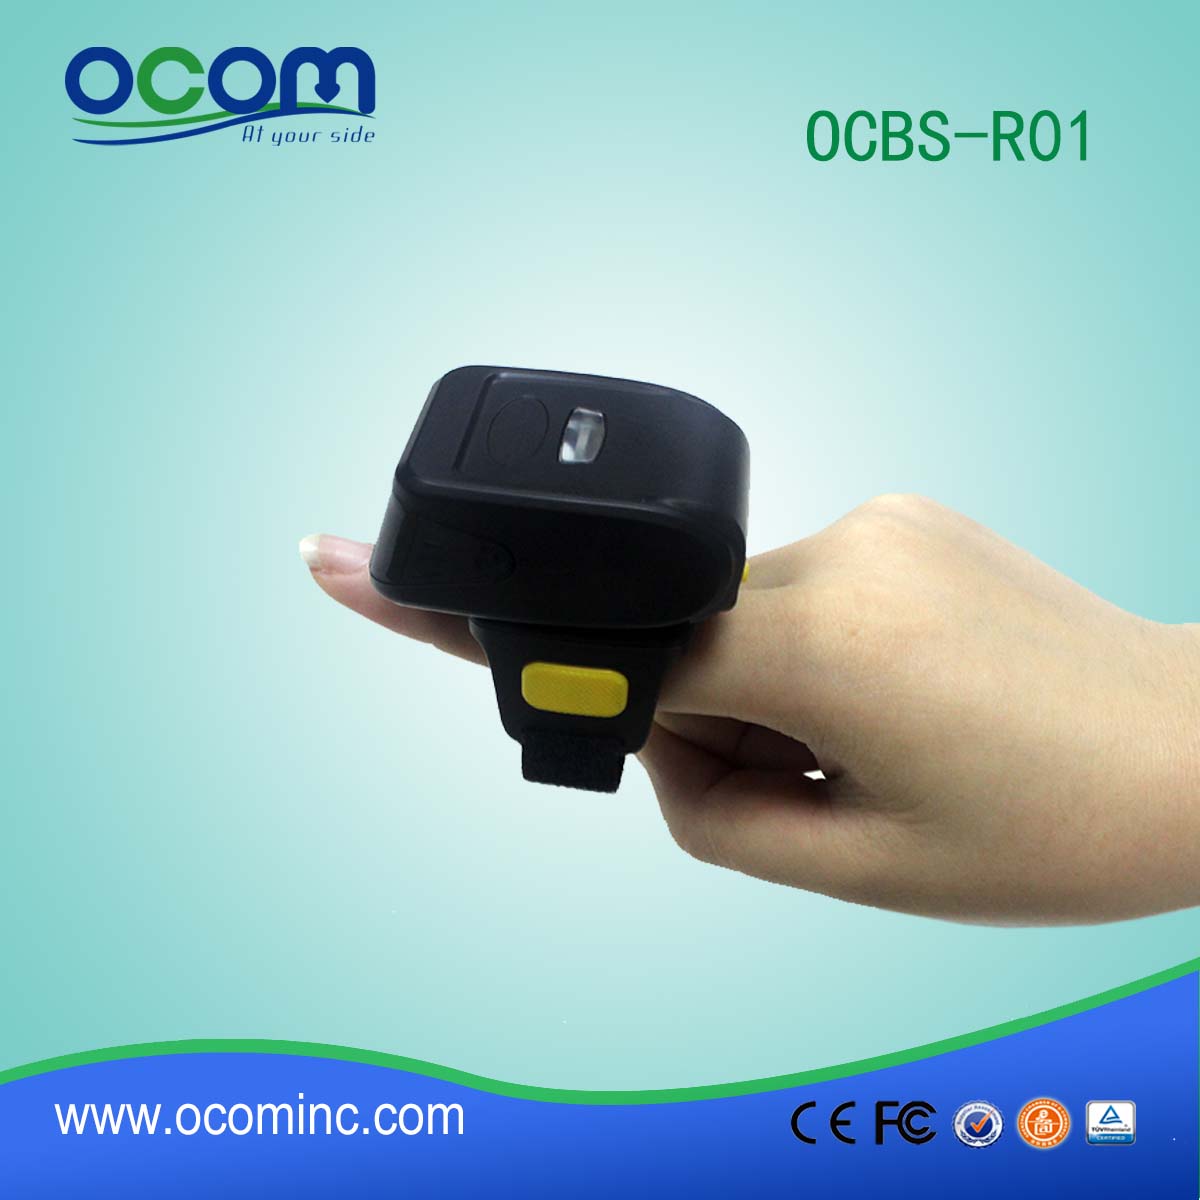 OCBs-R01 prezzo più basso lettore codice a barre piccola e portabile bluetooth